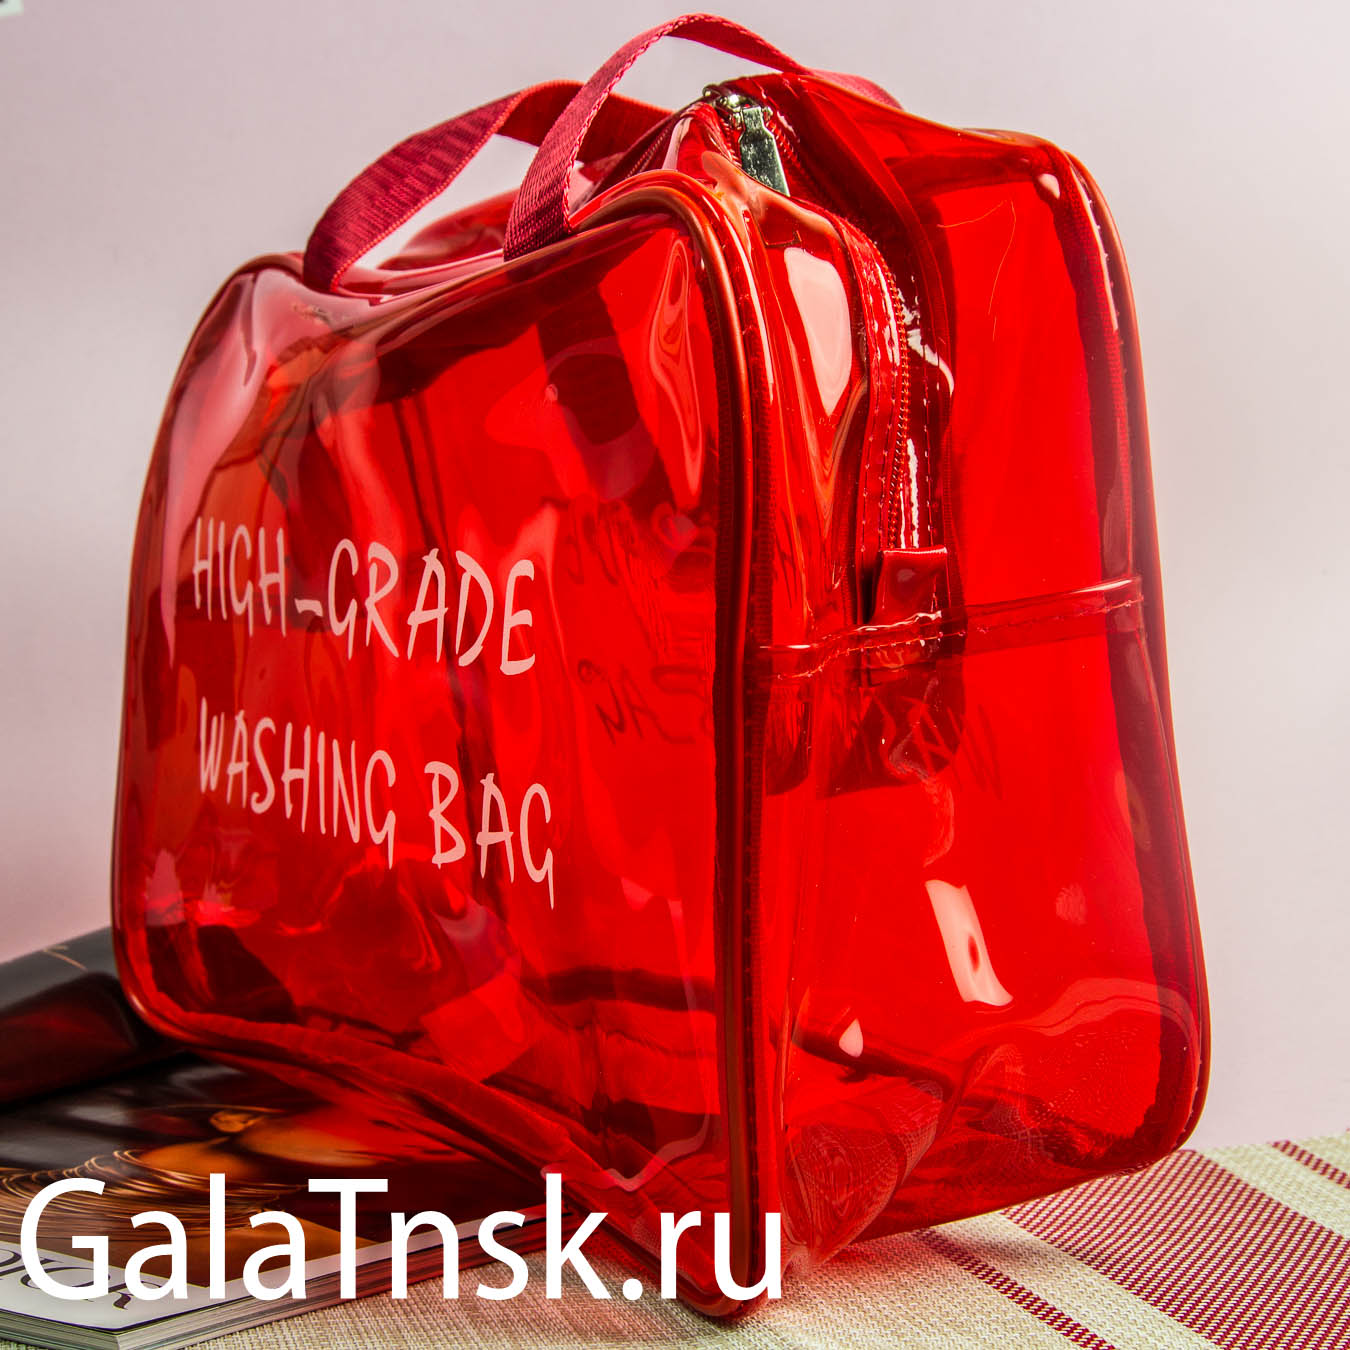 Косметичка для душа HIGH-GRADE WASHING BAG 335598 красный 